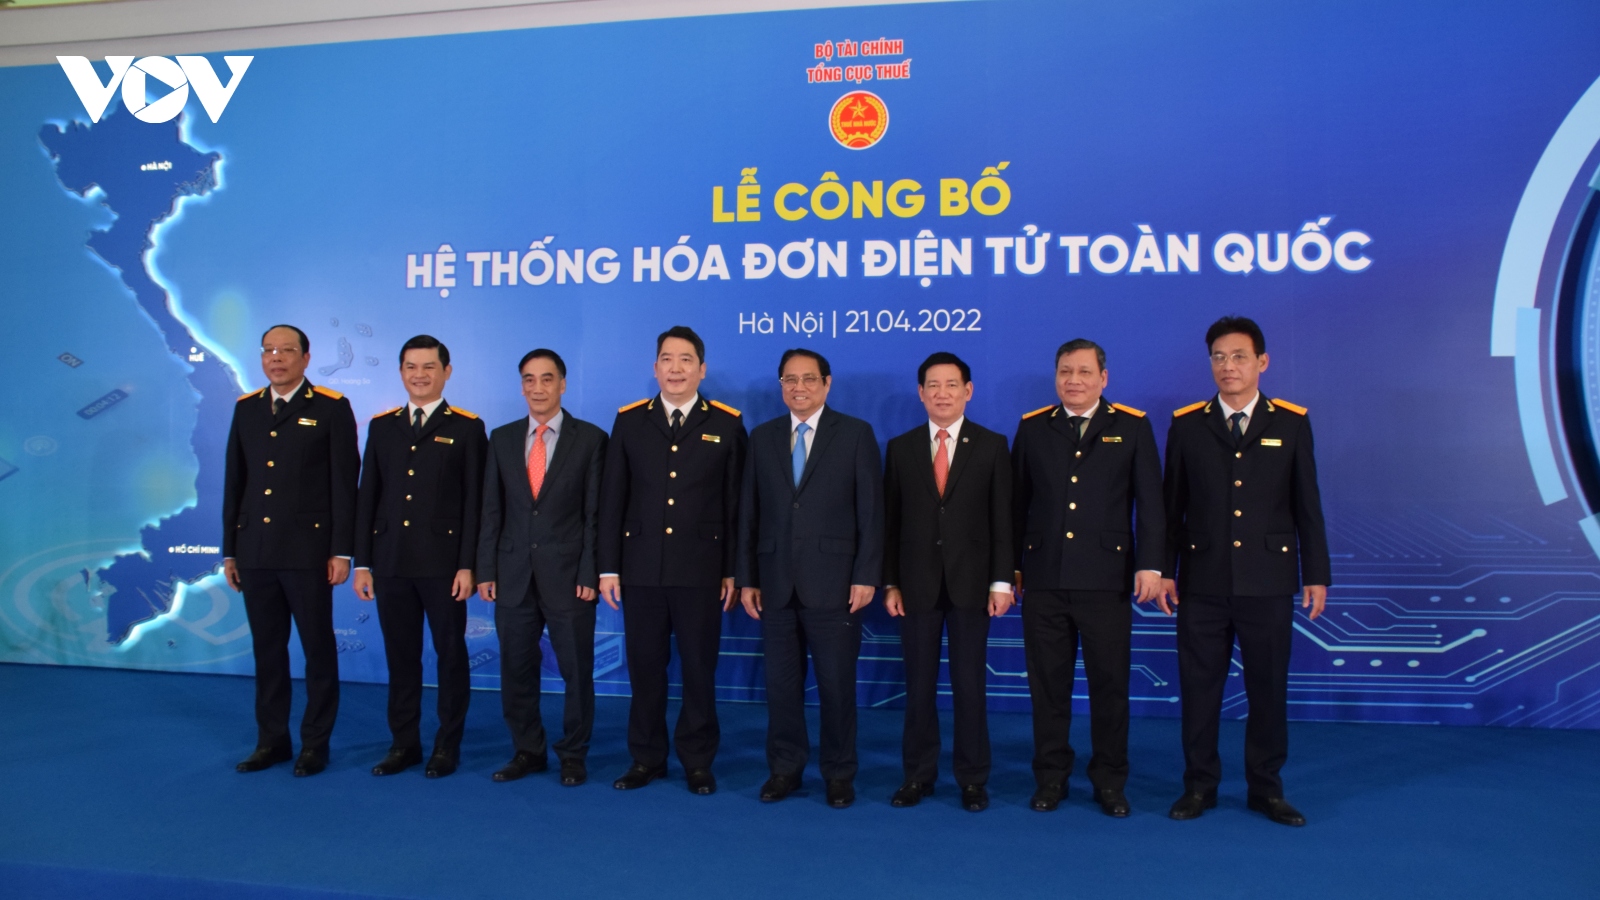 Thủ tướng Phạm Minh Chính dự lễ công bố hệ thống hóa đơn điện tử toàn quốc